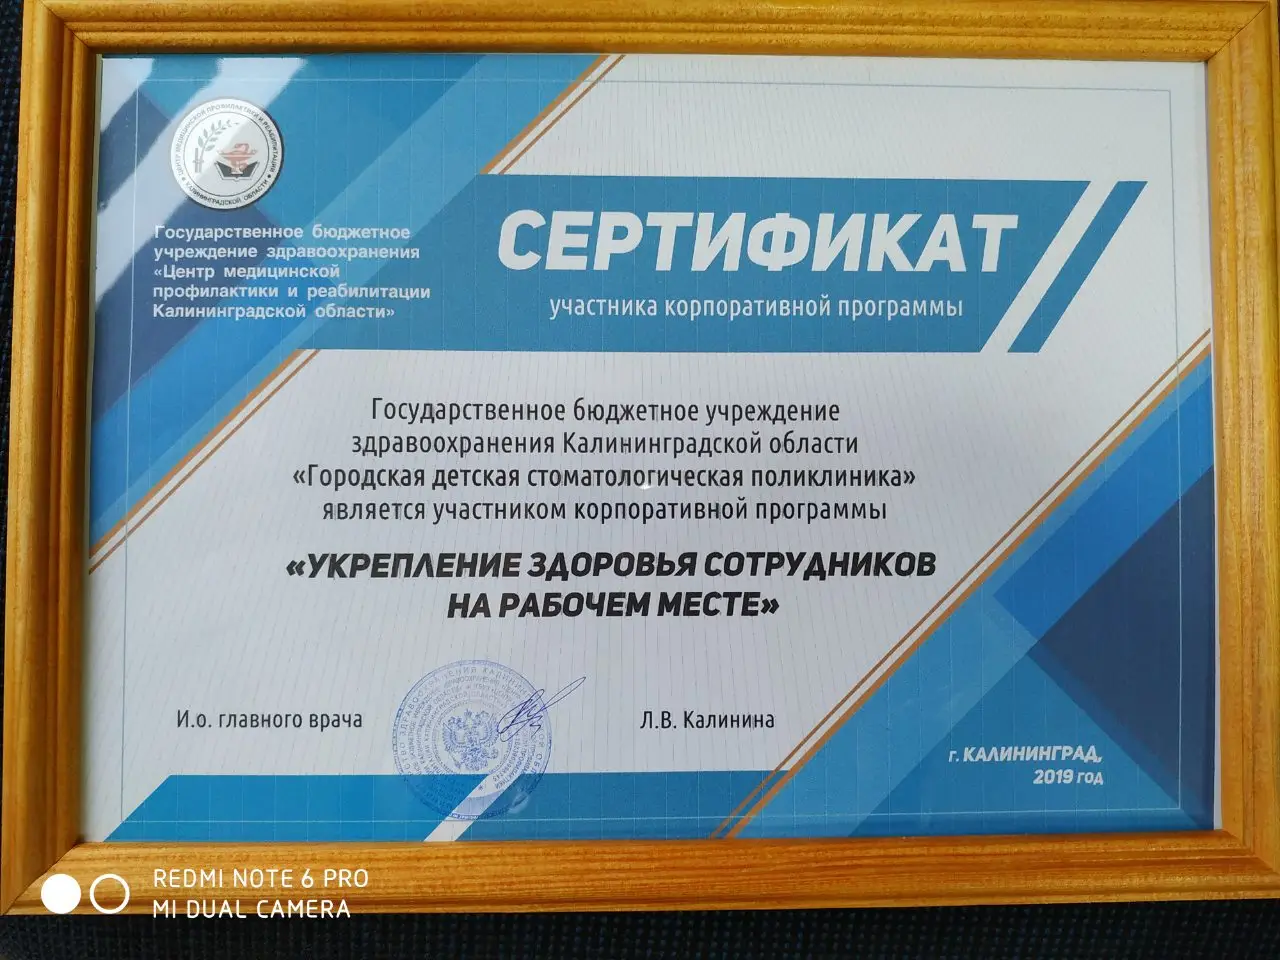 Сертификат за участие в корпоративной программе "Укрепление здоровья сотрудников на рабочем месте"